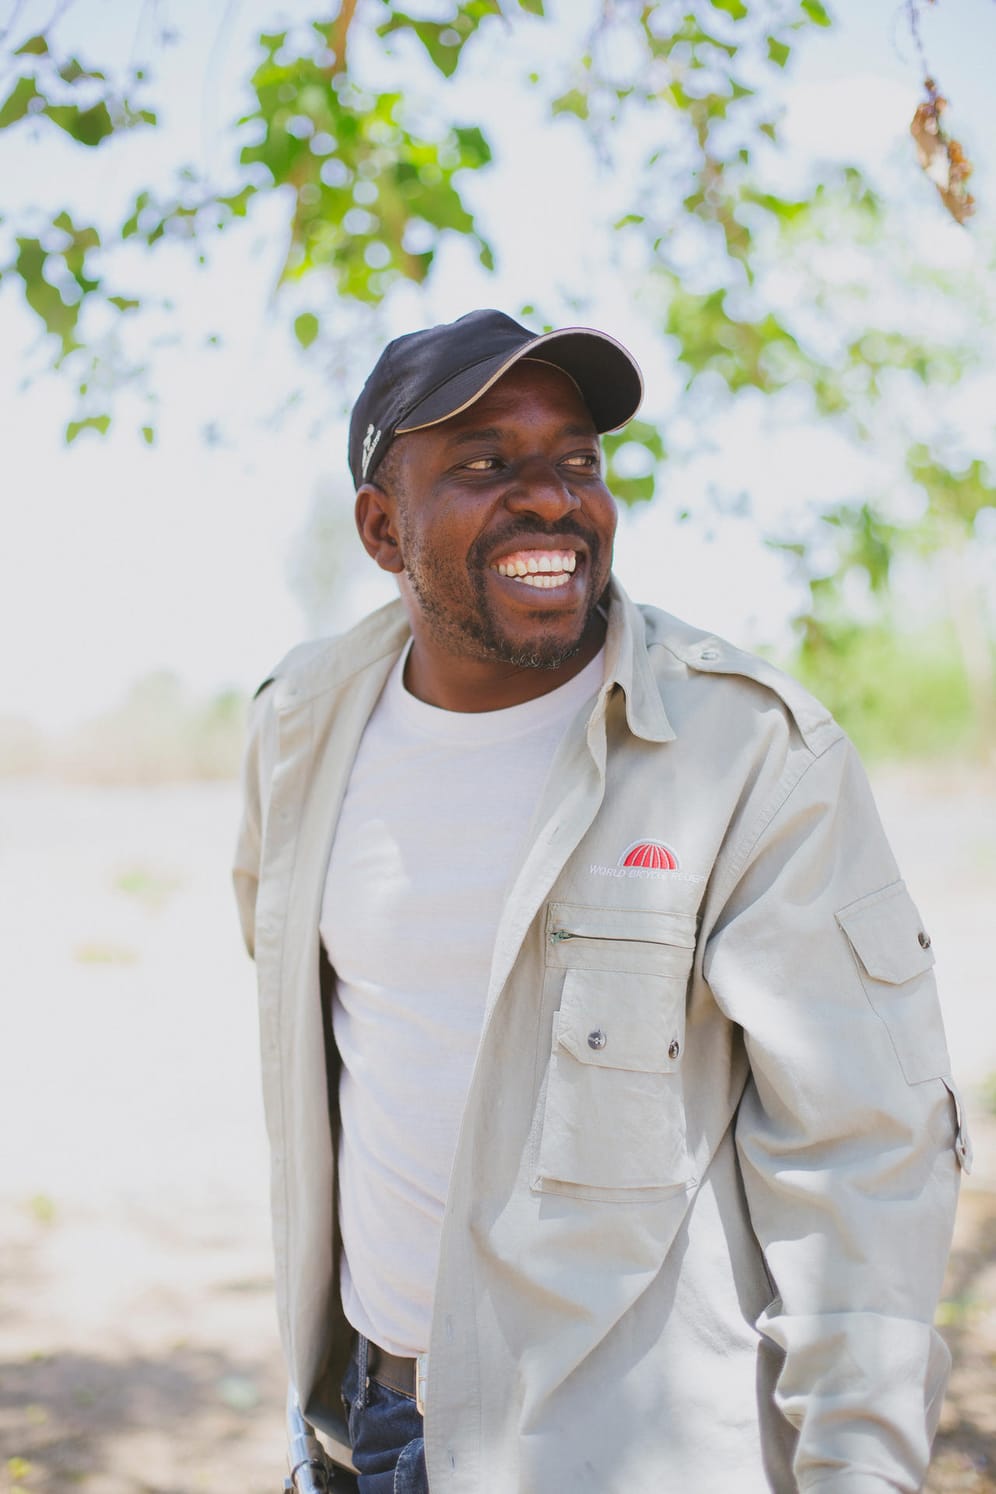 Verantwortlich für die Produktion in Sambia ist Brian Moonga, der Landesdirektor von World Bicycle Relief in dem Land.